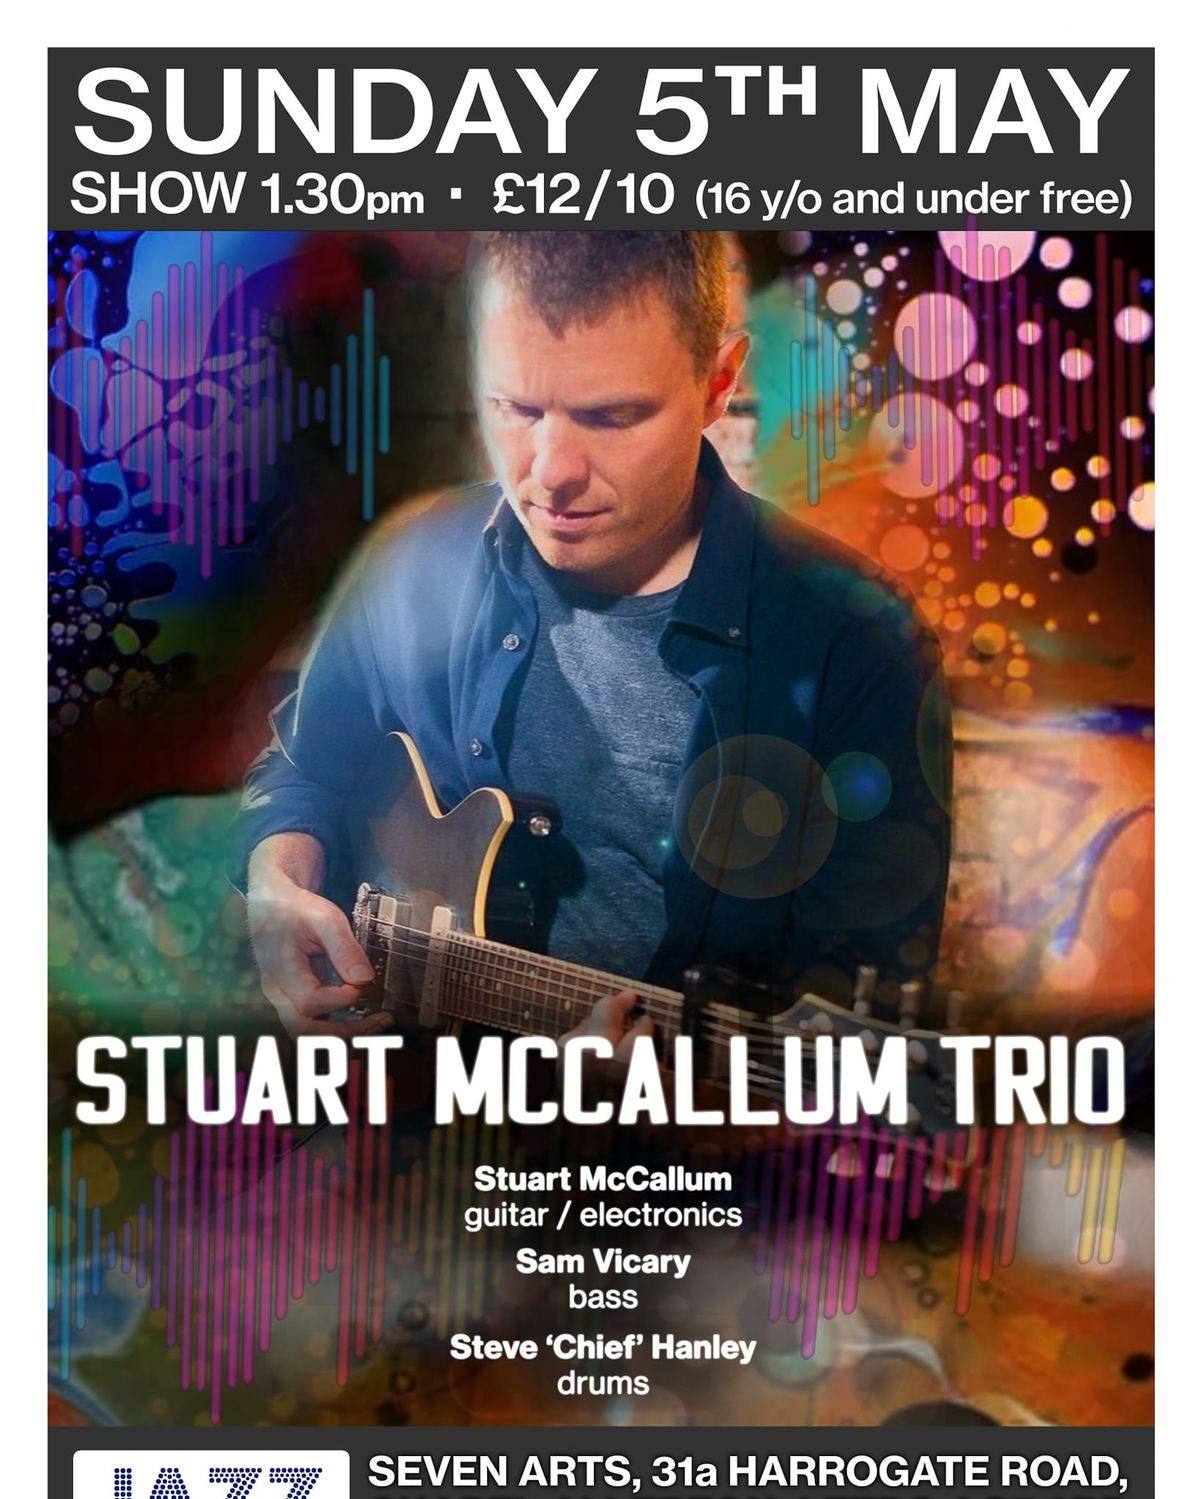 Stuart McCullum Trio with Steve Hanley and Sam Vicary